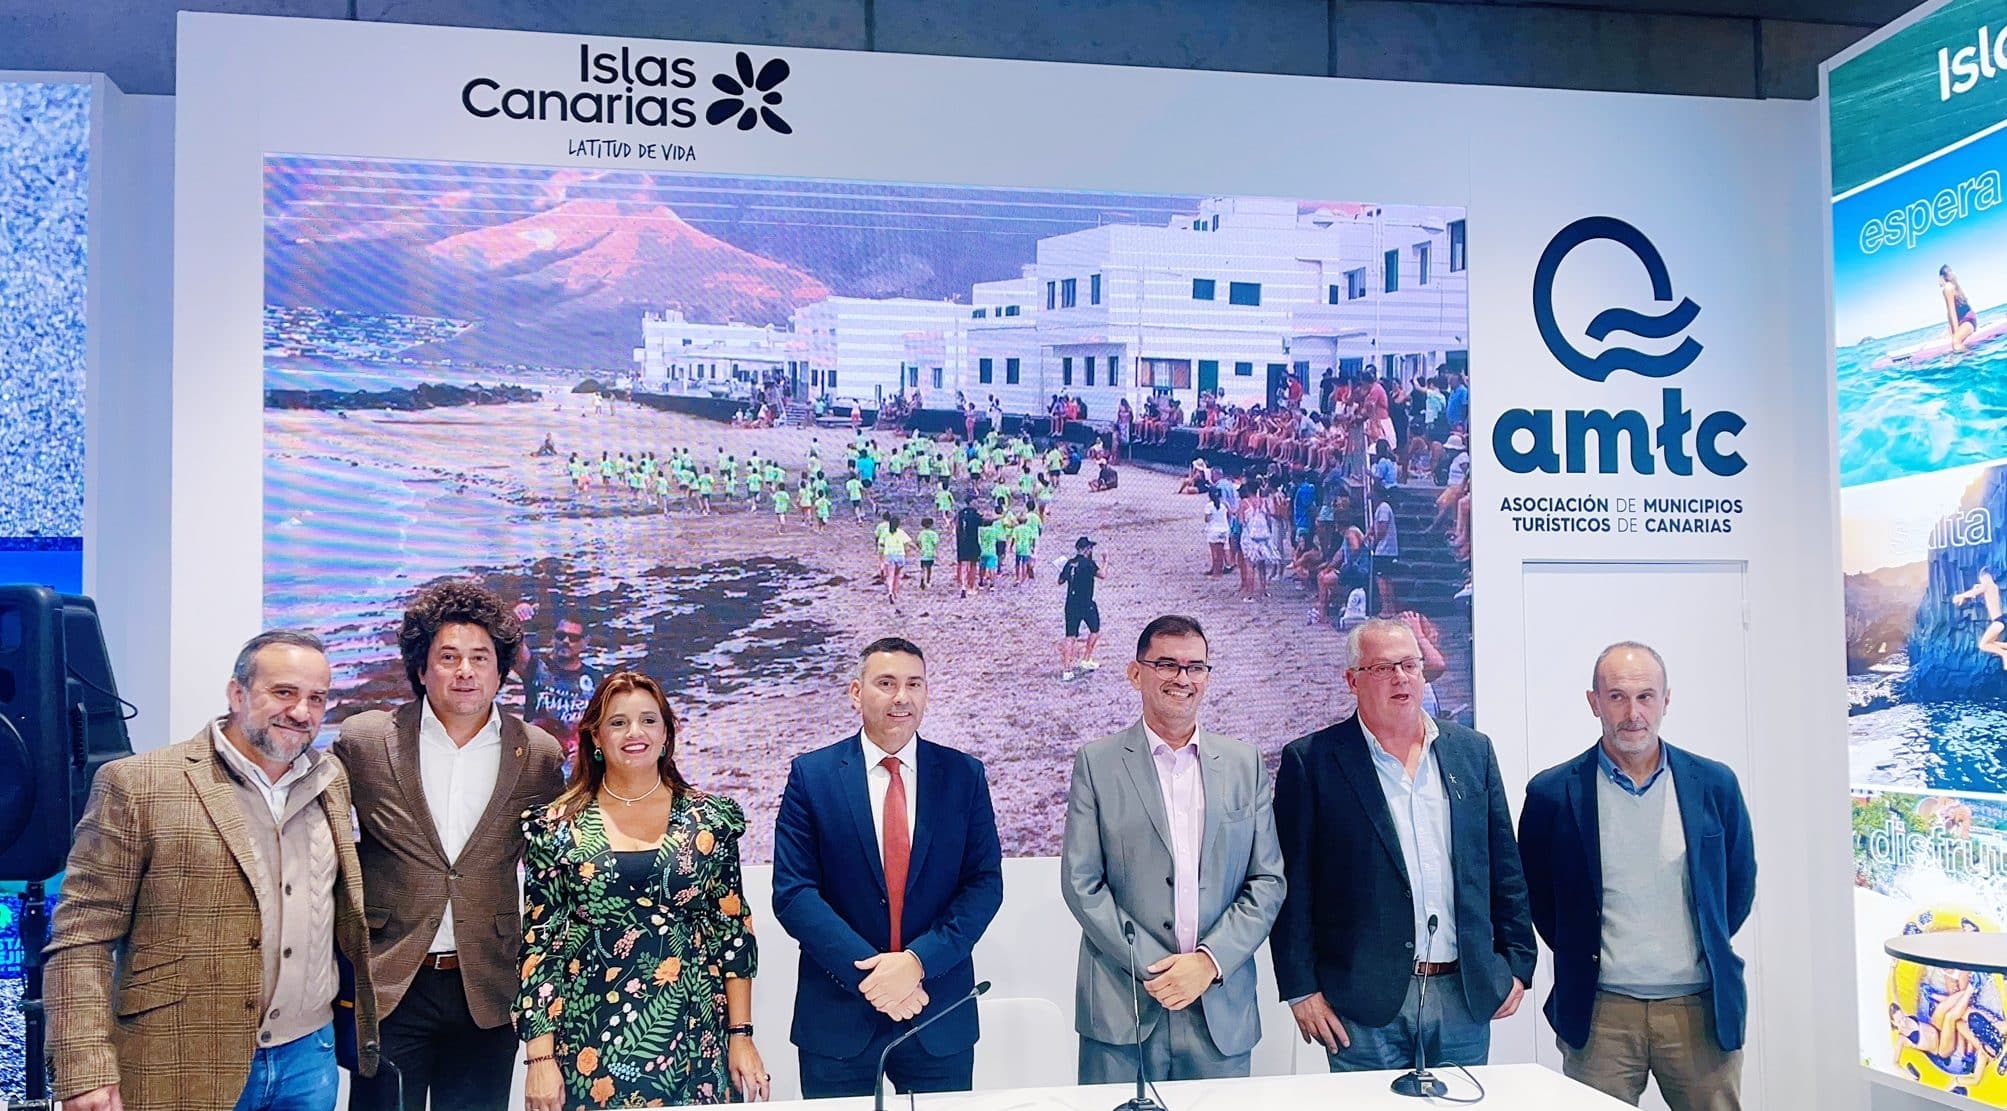 <strong>Oswaldo Betancort: “Las instituciones debemos respaldar la iniciativa privada que apuesta por consolidar un turismo deportivo de calidad en Lanzarote y La Graciosa”</strong>